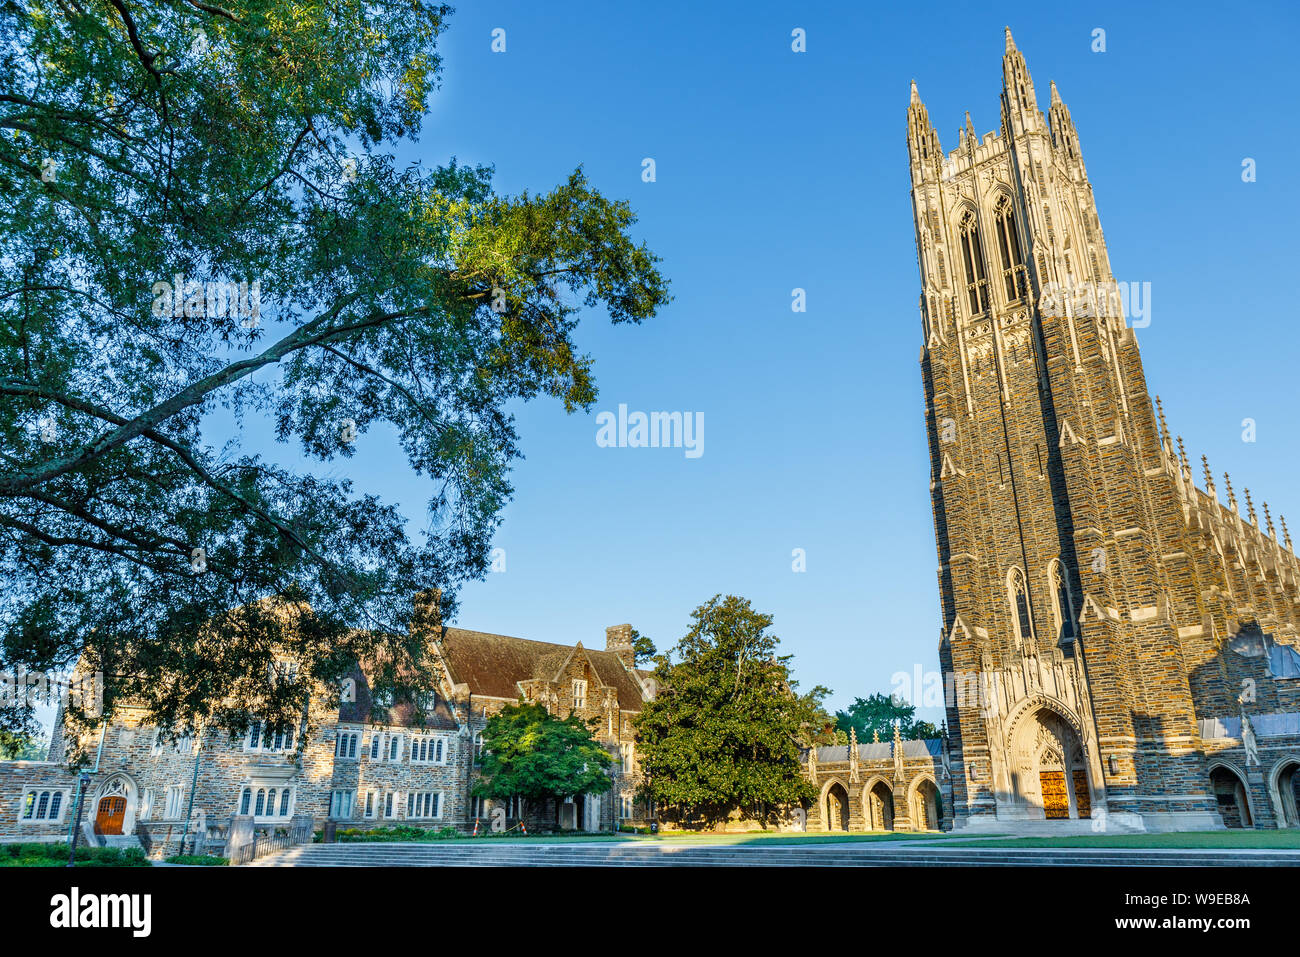 DURHAM, NC, USA - 8 août : chapelle de l'Université Duke, le 8 août 2019 à l'Université Duke de Durham, Caroline du Nord. Banque D'Images